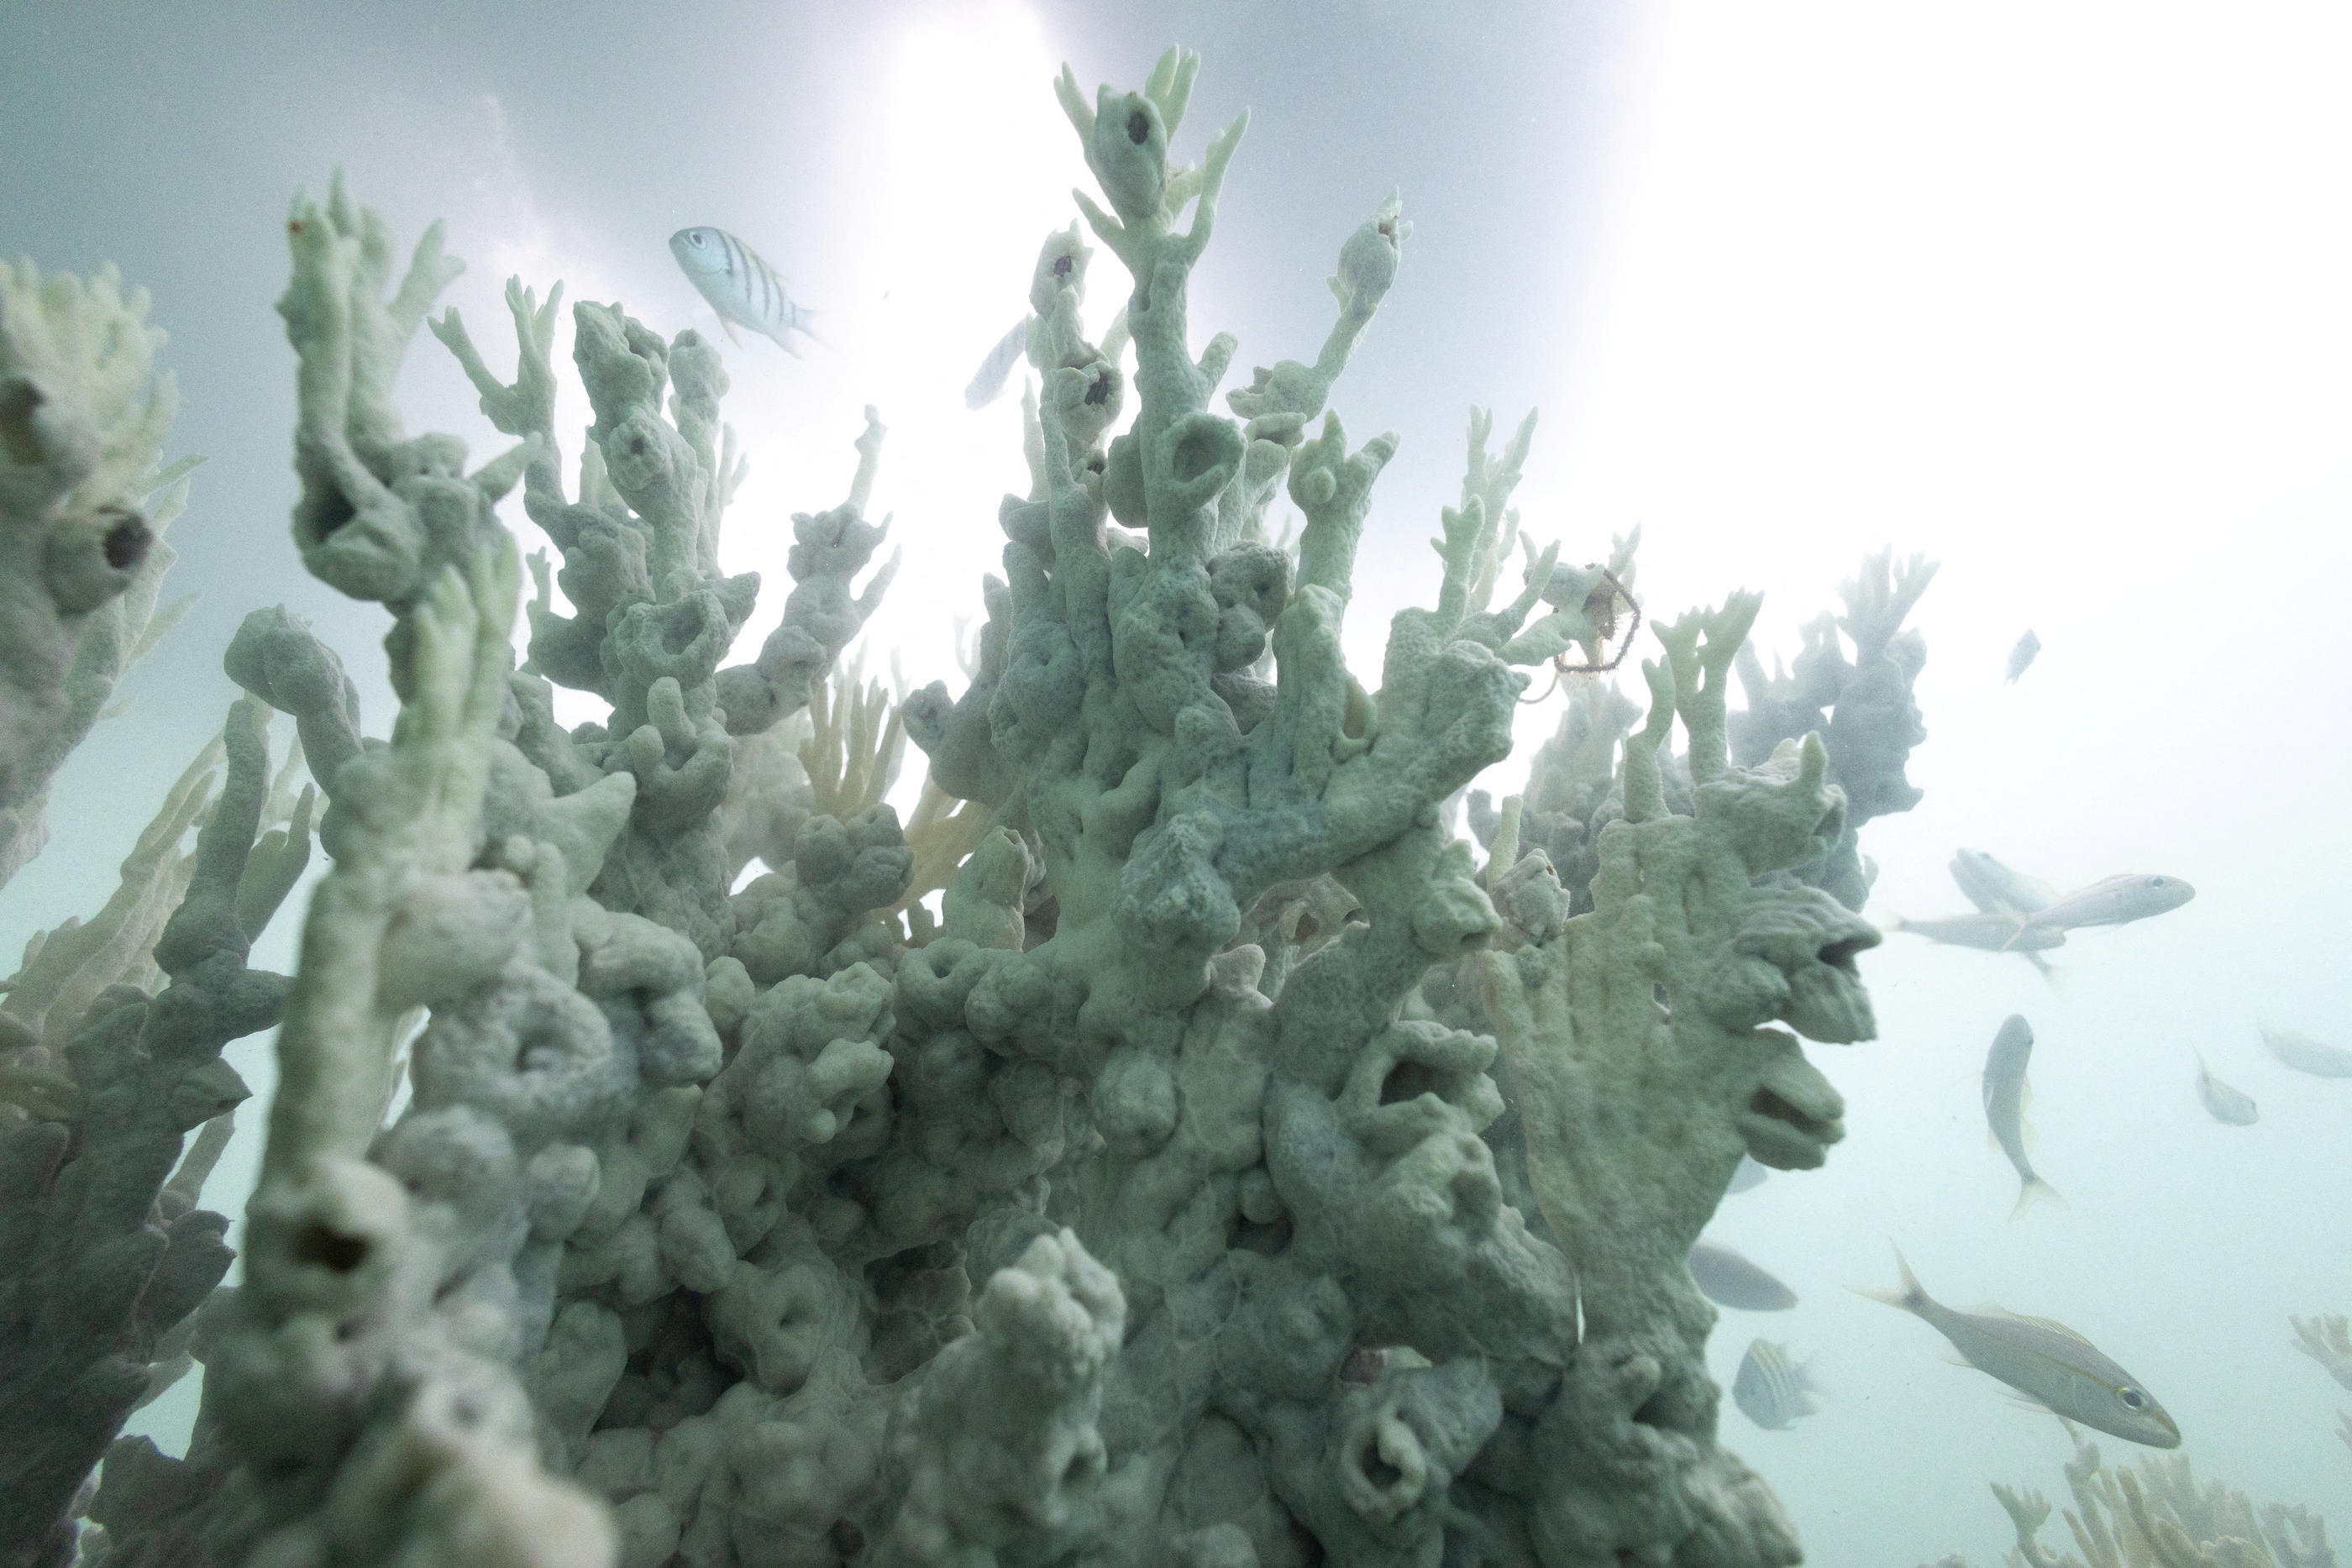 Les colonies de coraux souffrent dans le monde entier, de l’Australie à la Floride, en raison de la hausse de la température des océans. (Illustration) Reuters/Jorge Silva